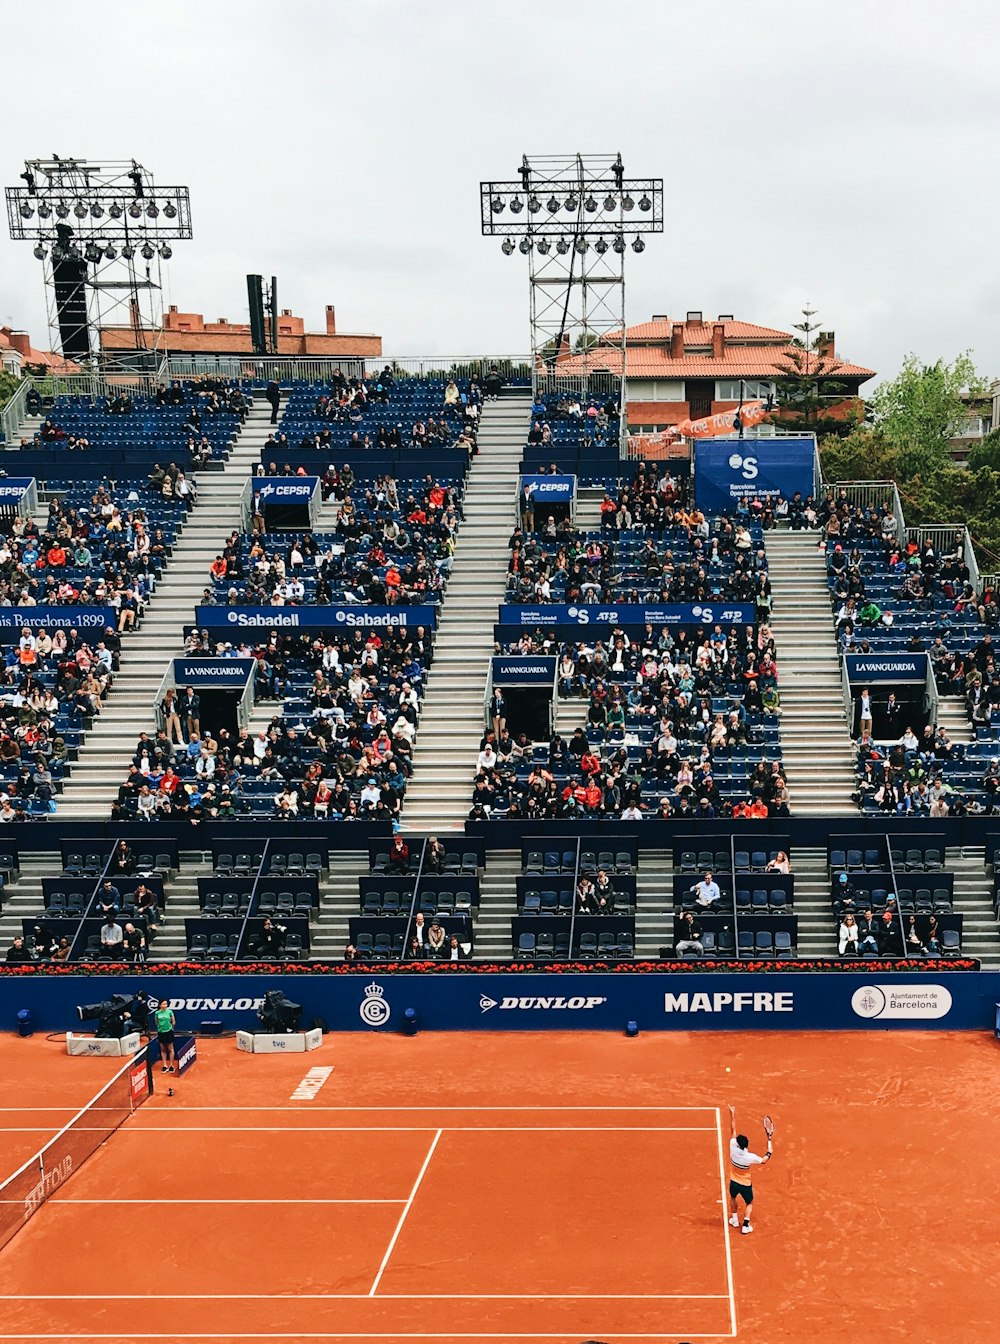 Personas sentadas en las gradas mientras ven un partido de tenis sobre césped durante el día